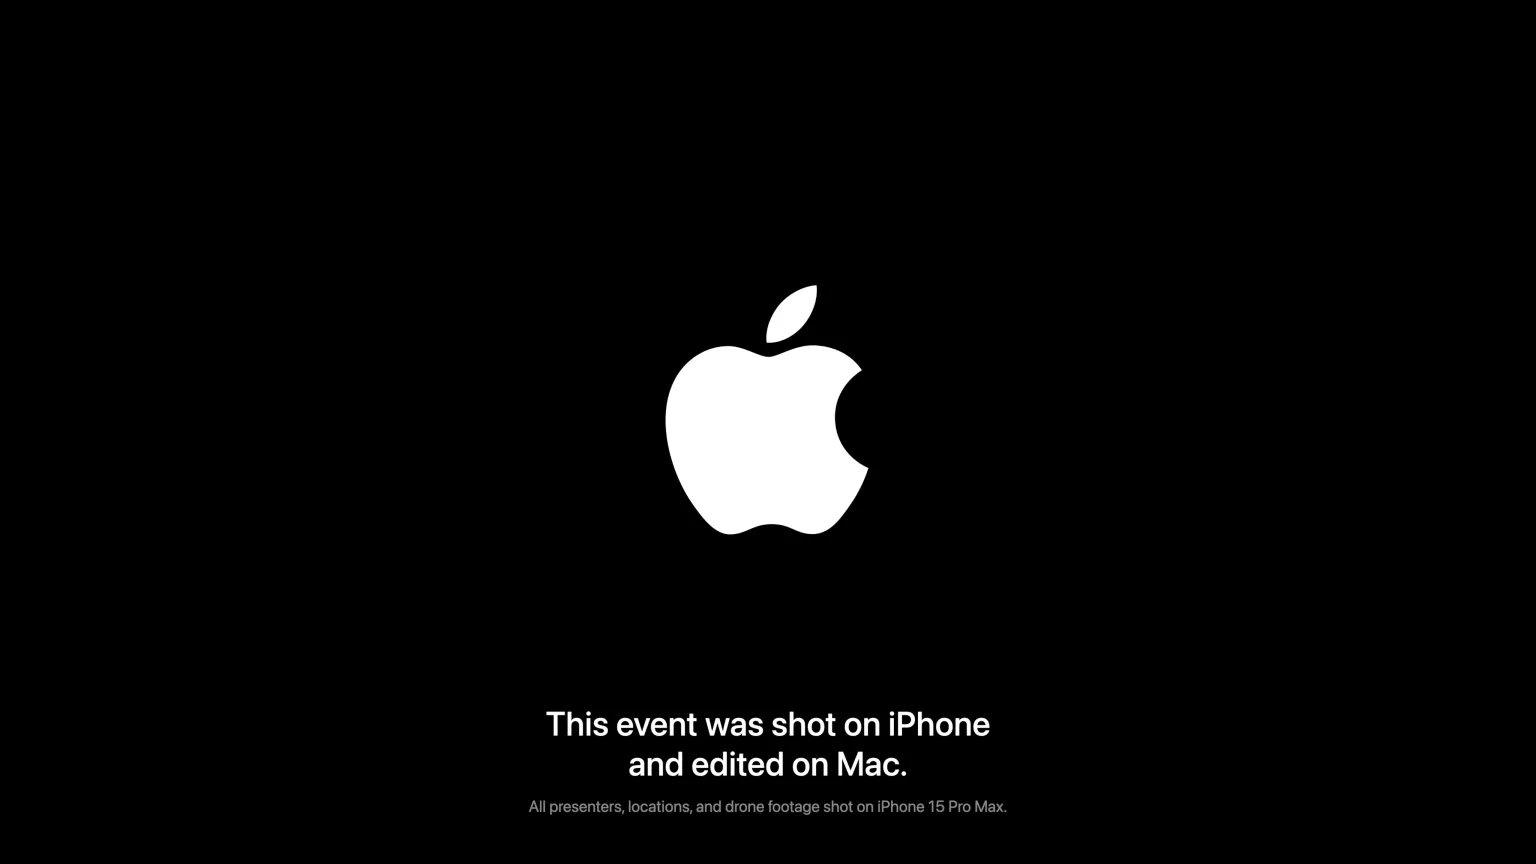 Cartel con el logo de Apple y fondo negro que dice el evento fue grabado con iPhone y editado con Mac